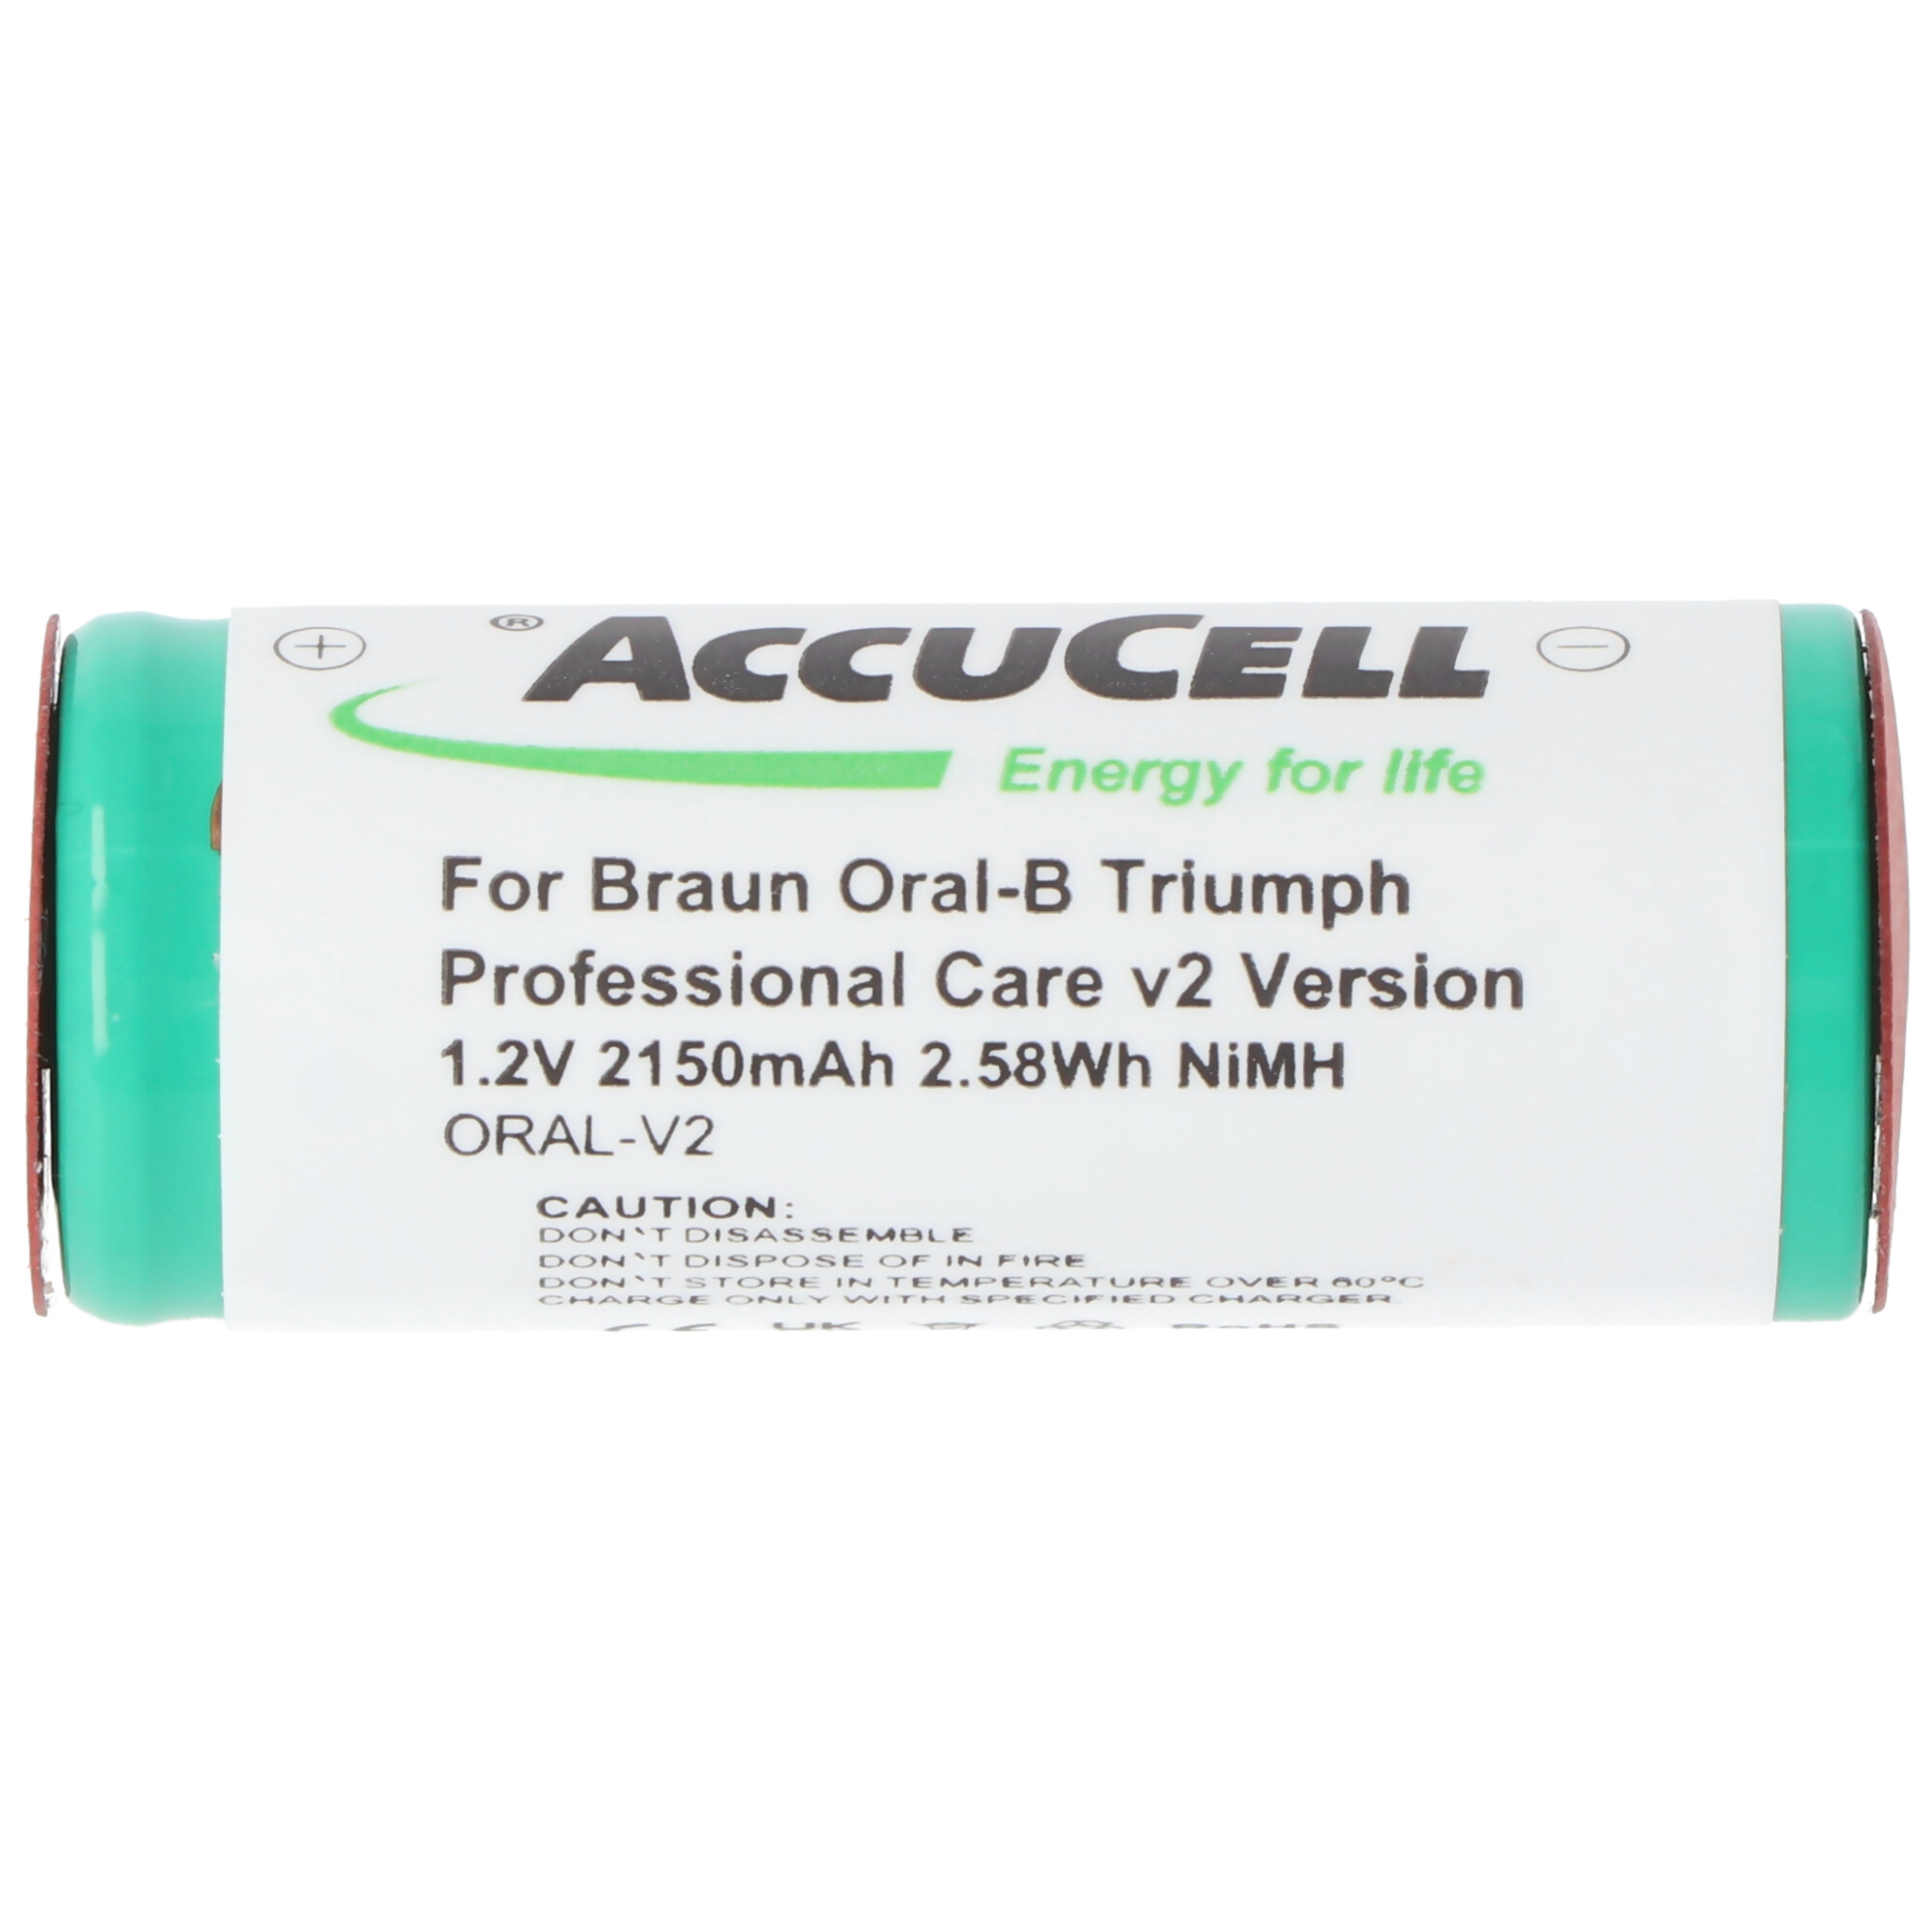 Akku passend für Braun Oral-B Triumph Professional Care v2 Version, Lötfahnen mittig 2mm breite, Abmessungen 43x17mm